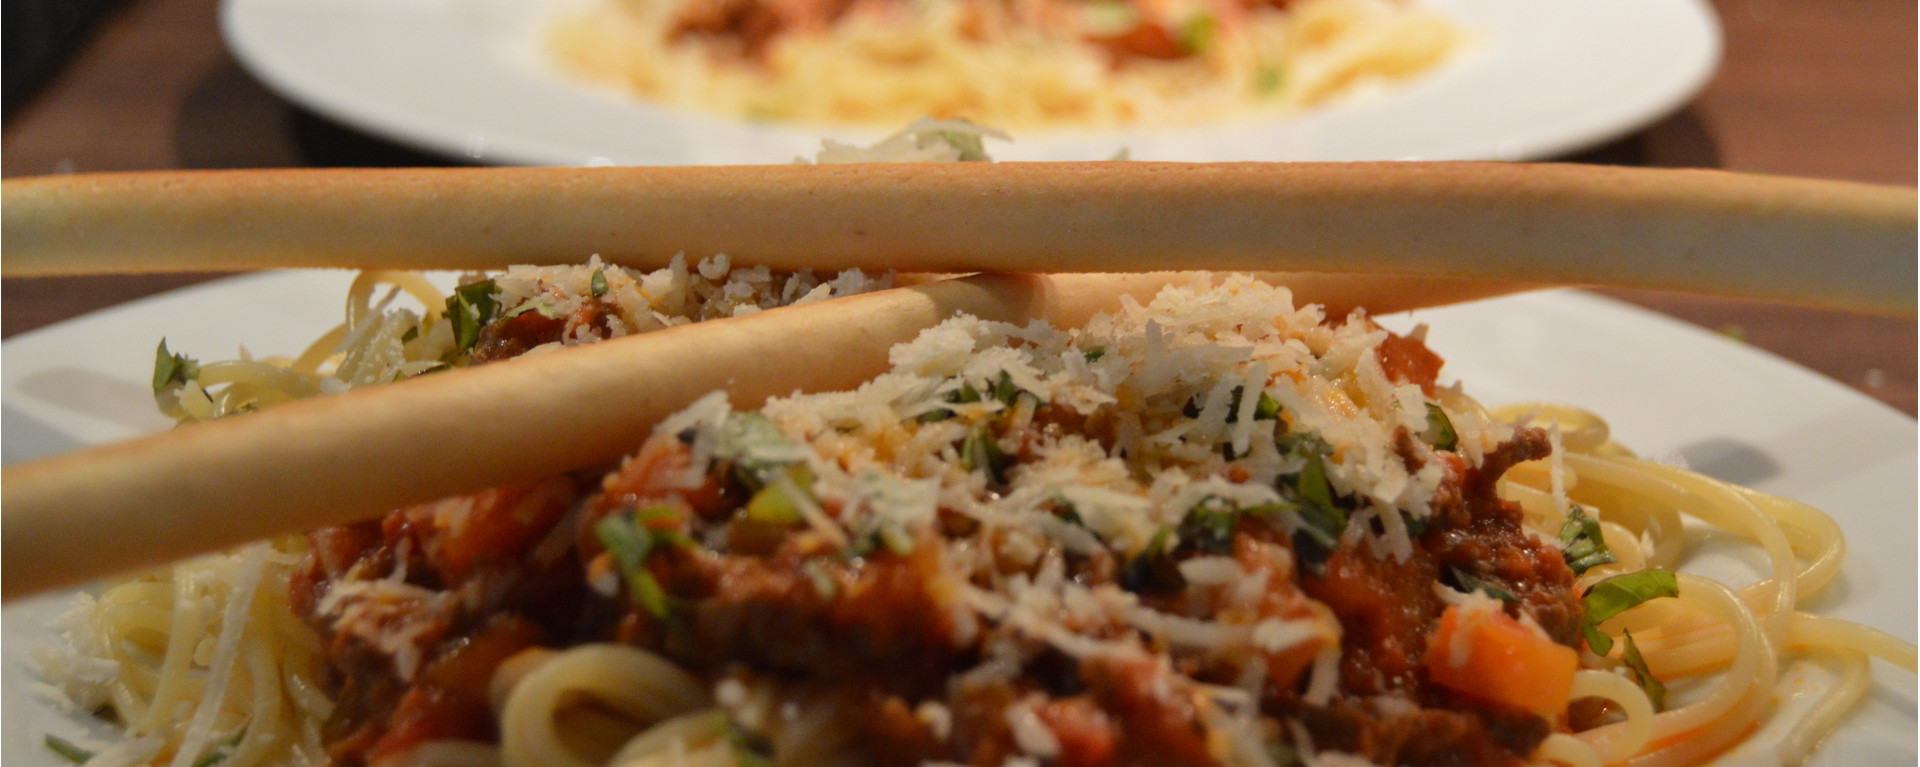 ChefNorway's Homemade Spaghetti